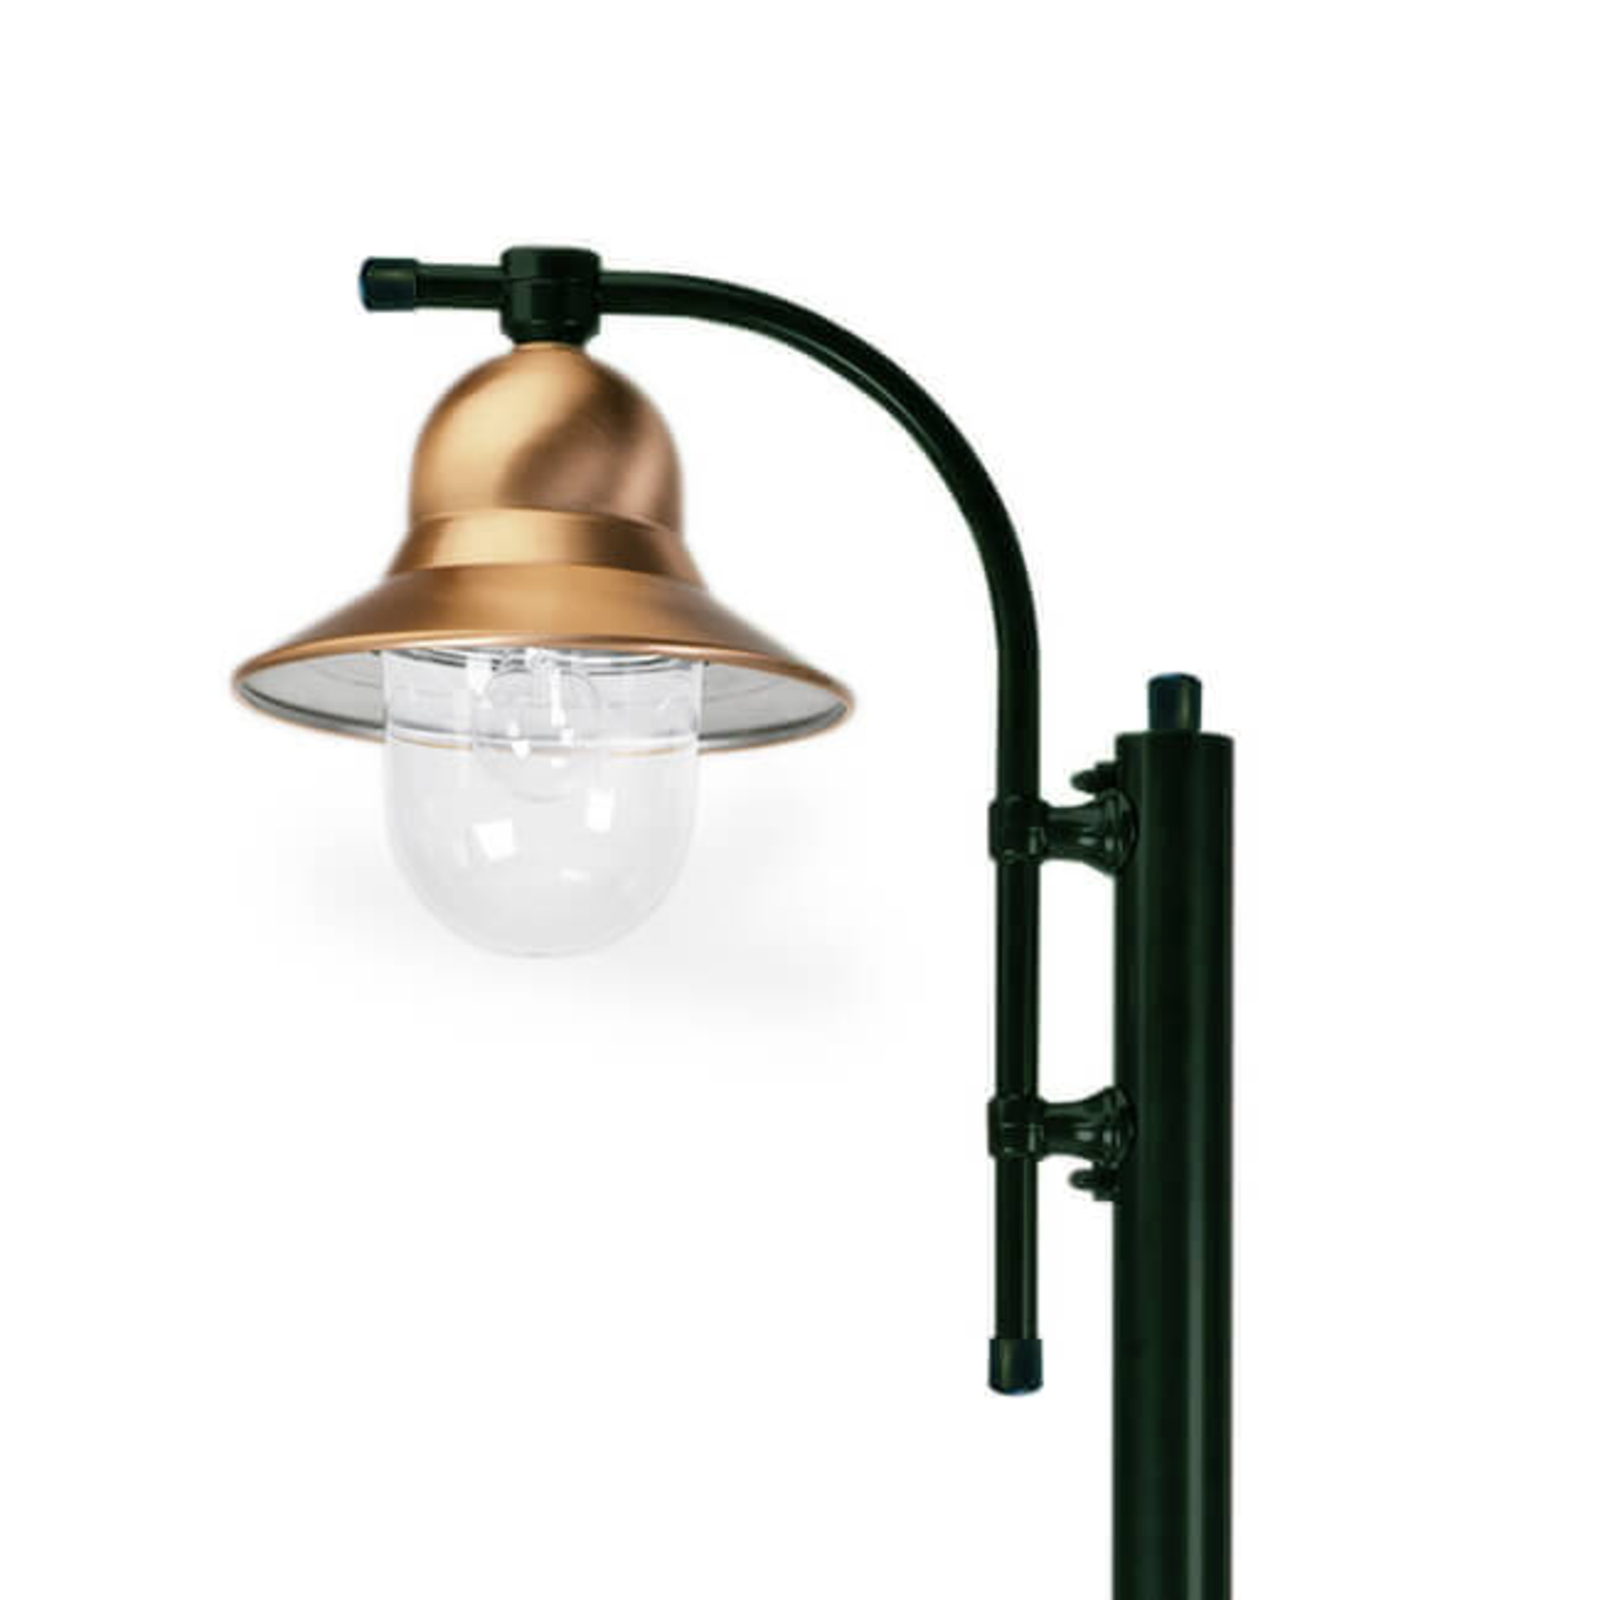 1-světelné sloupkové svítidlo Toscane 240 cm, zelené